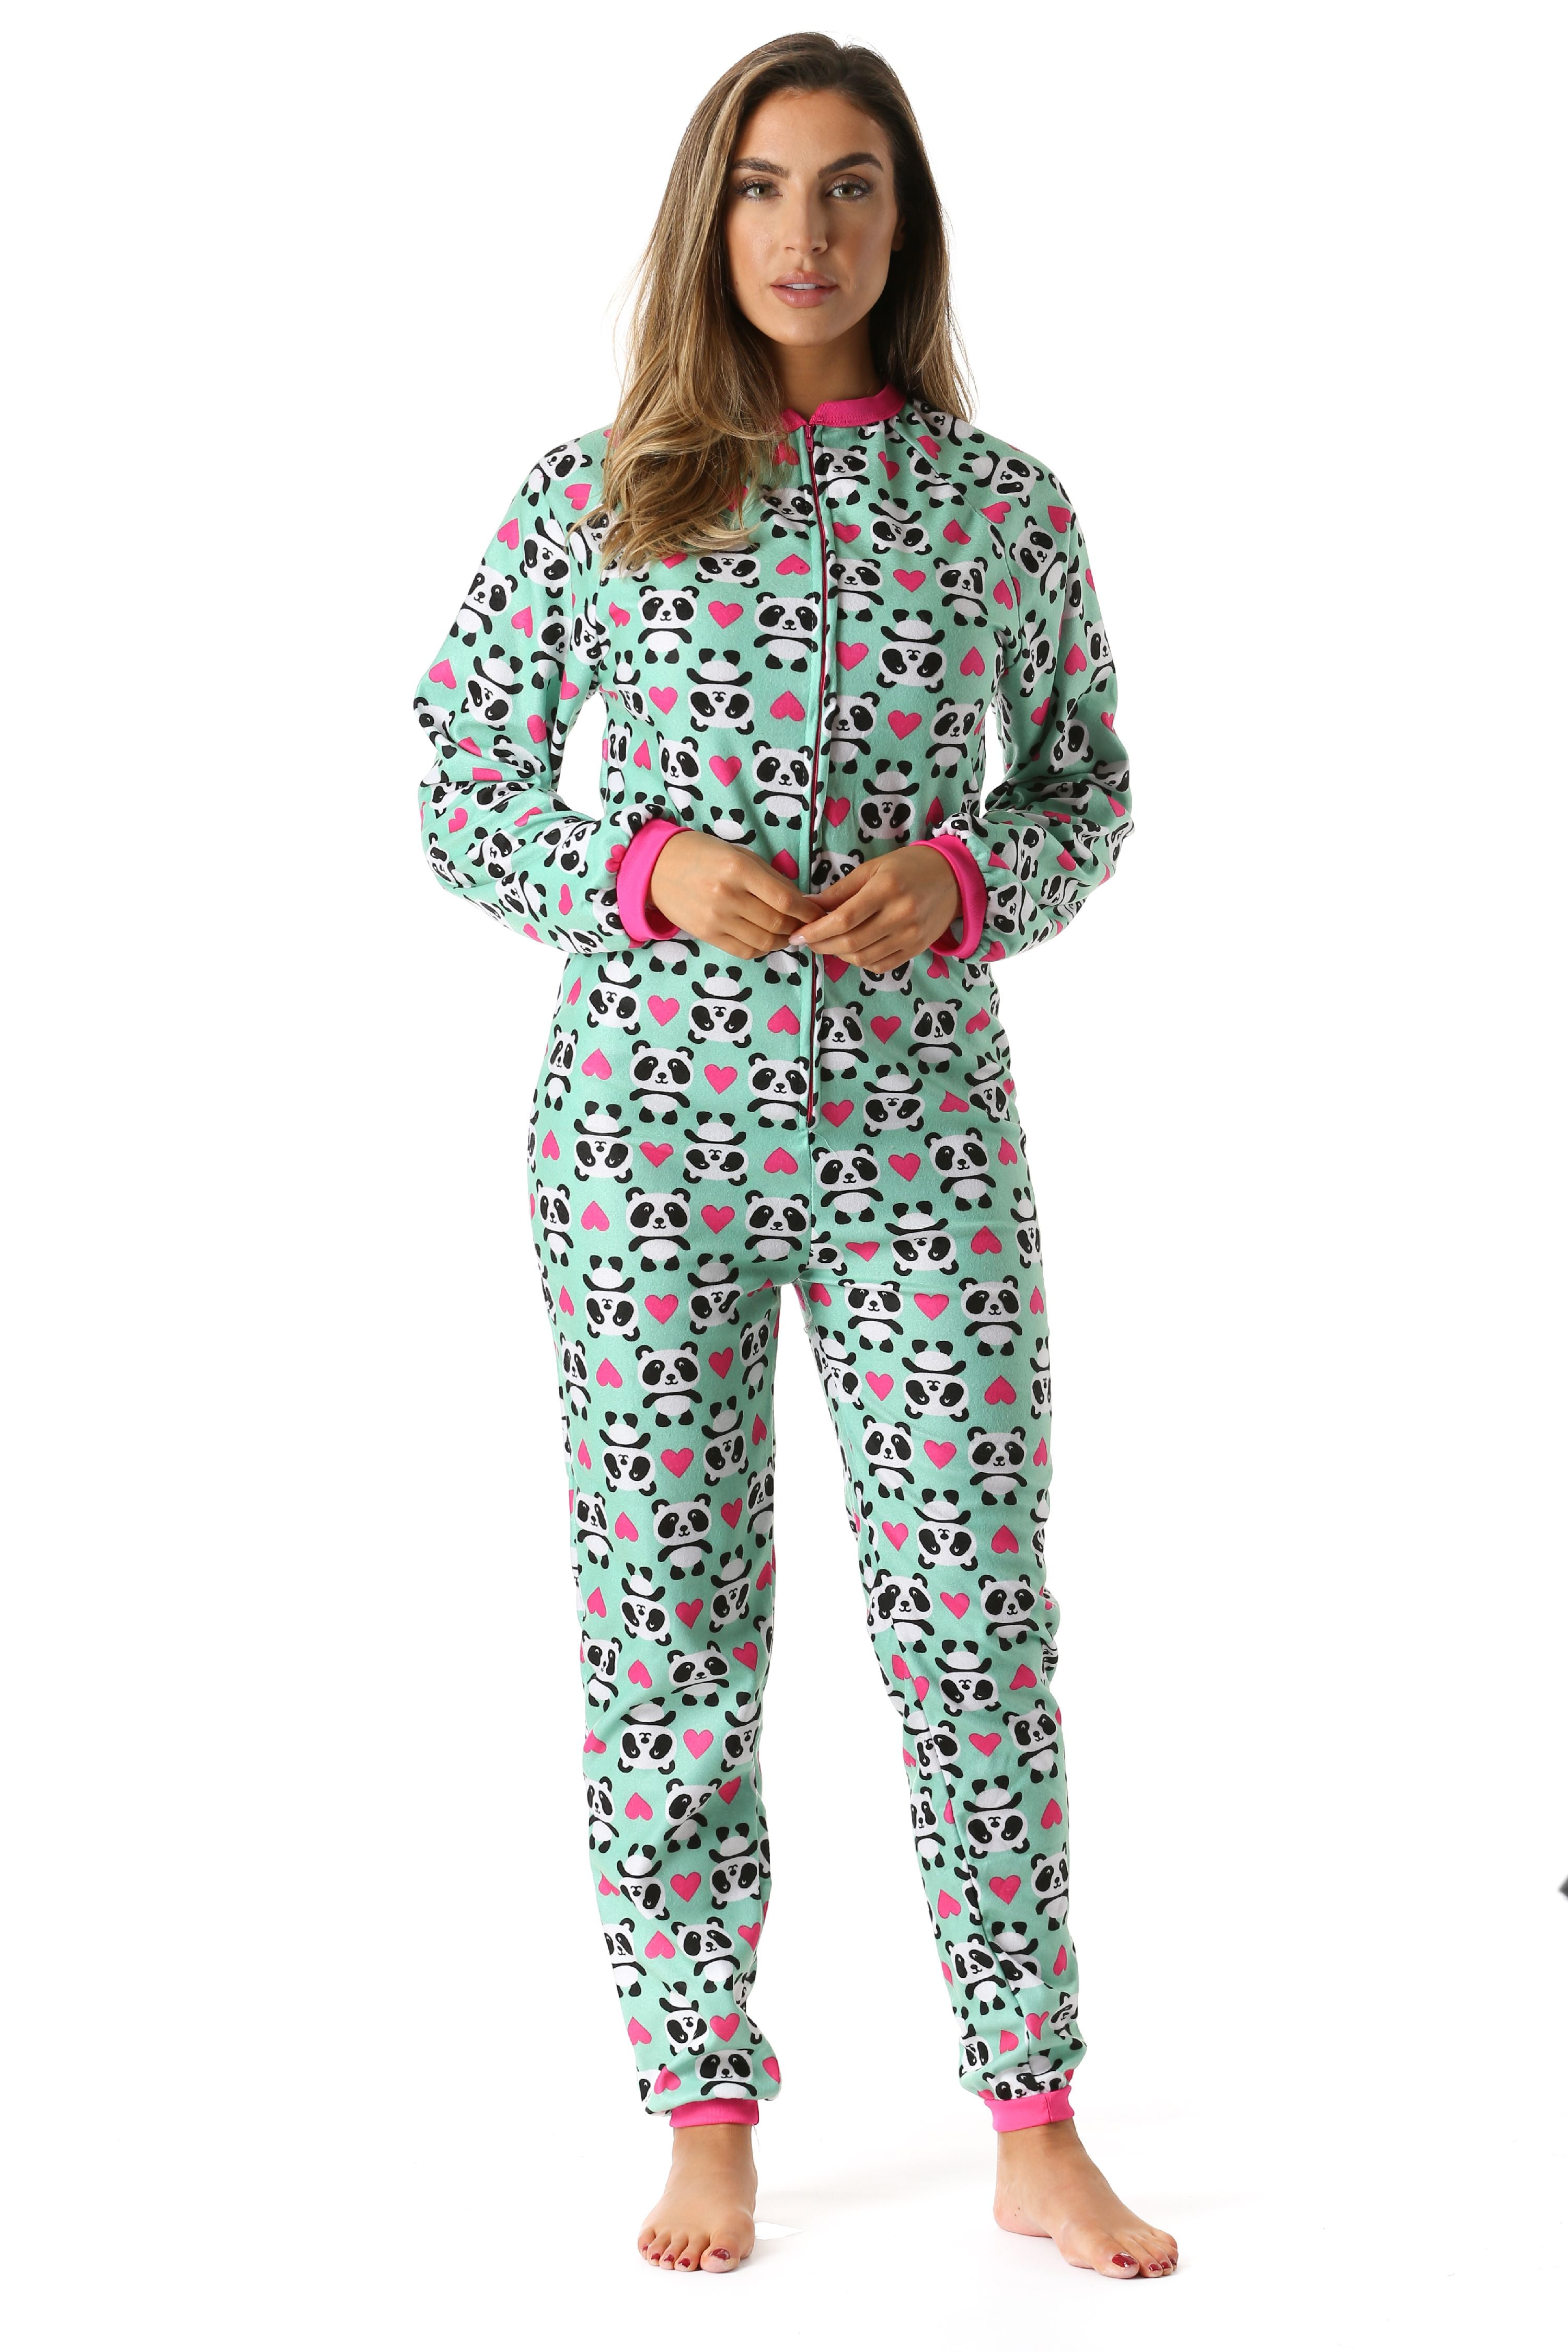 Just Love - just love printed flannel adult onesie/pajamas, panda love ...